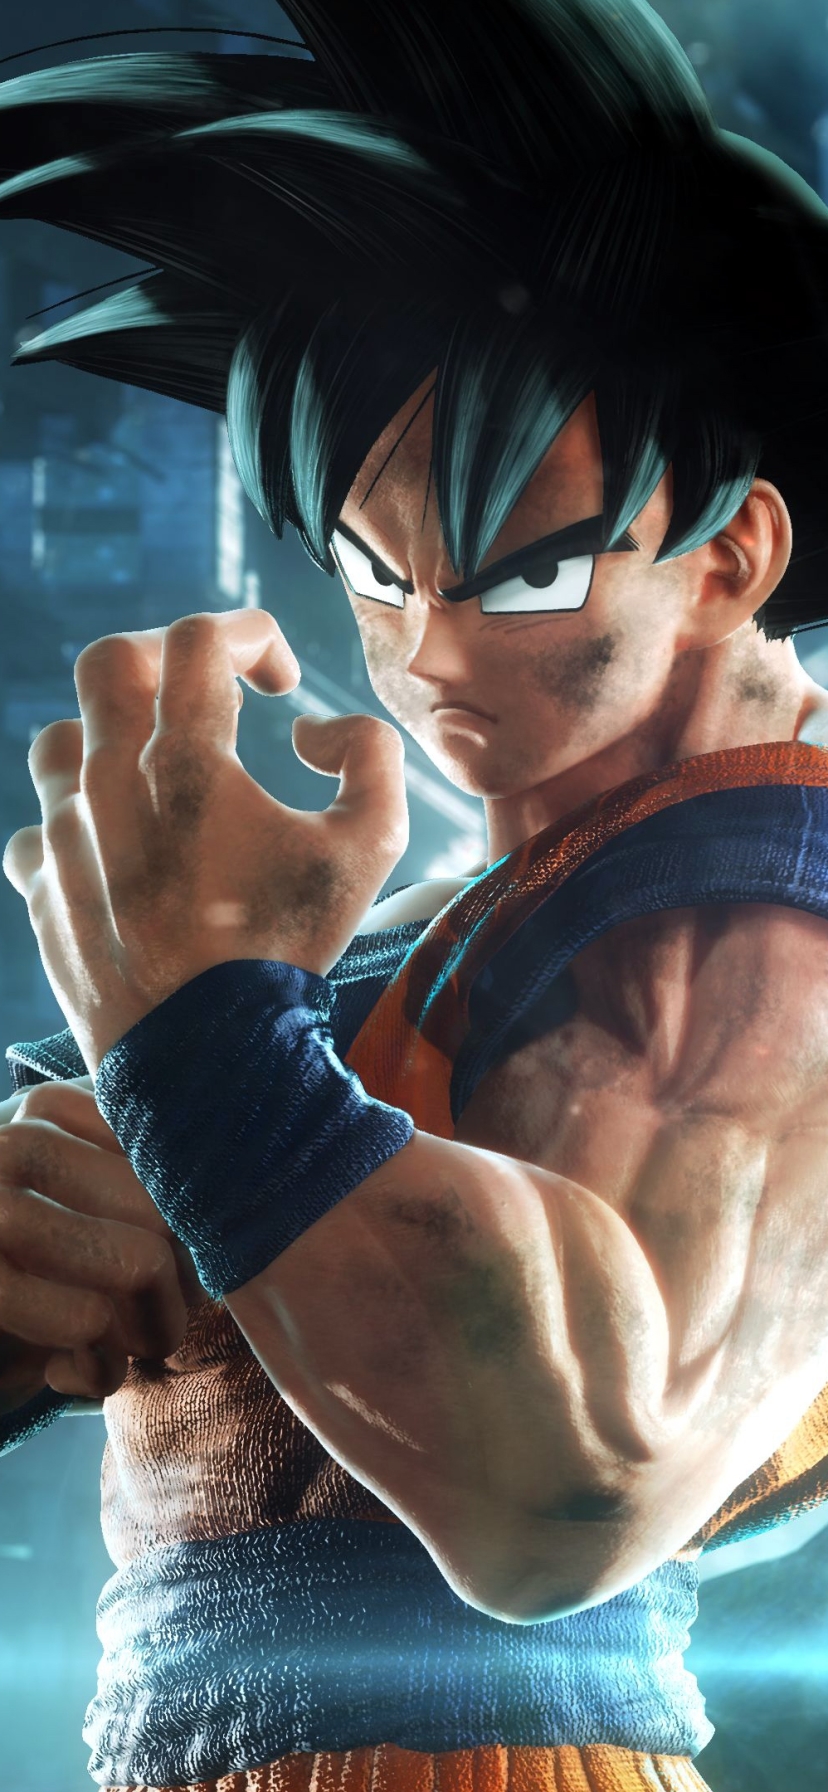 Descarga gratuita de fondo de pantalla para móvil de Videojuego, Goku, Jump Force.